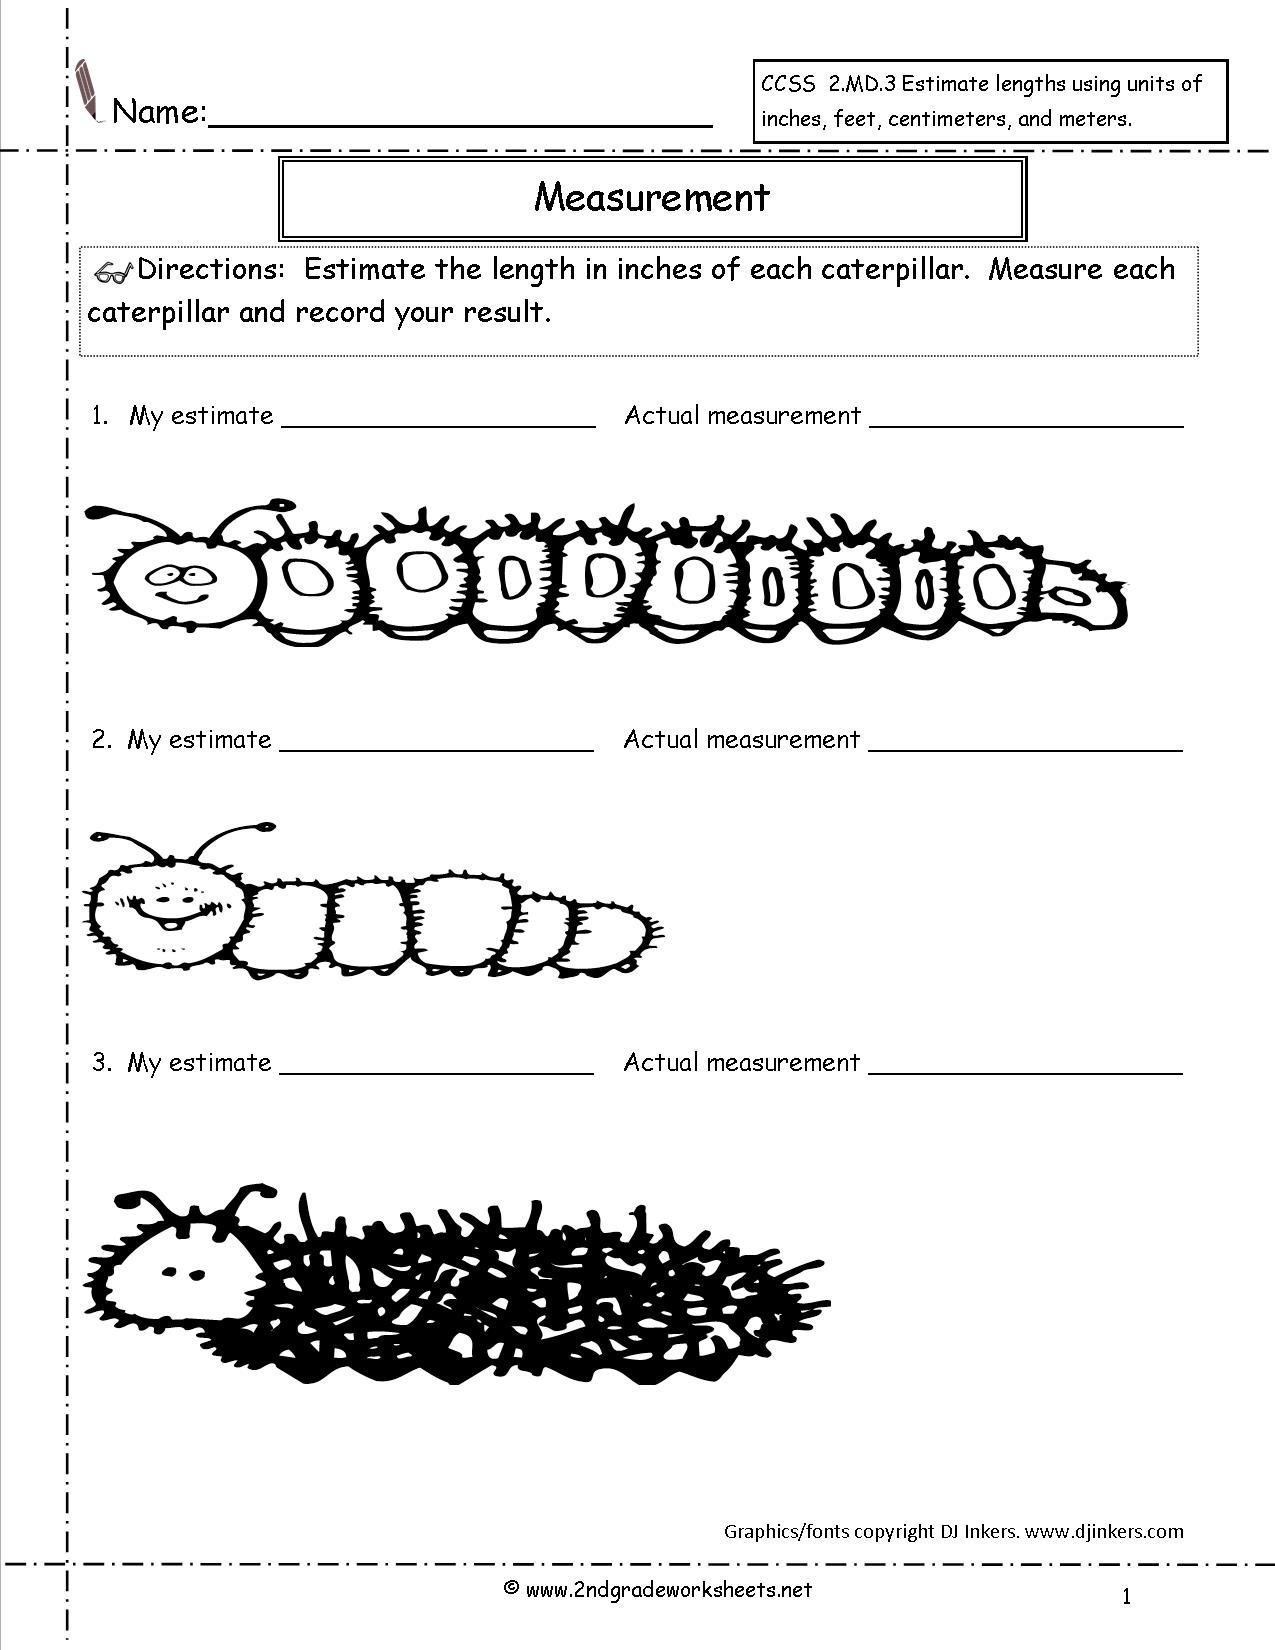 Length Measurement Worksheets 2nd Grade Image